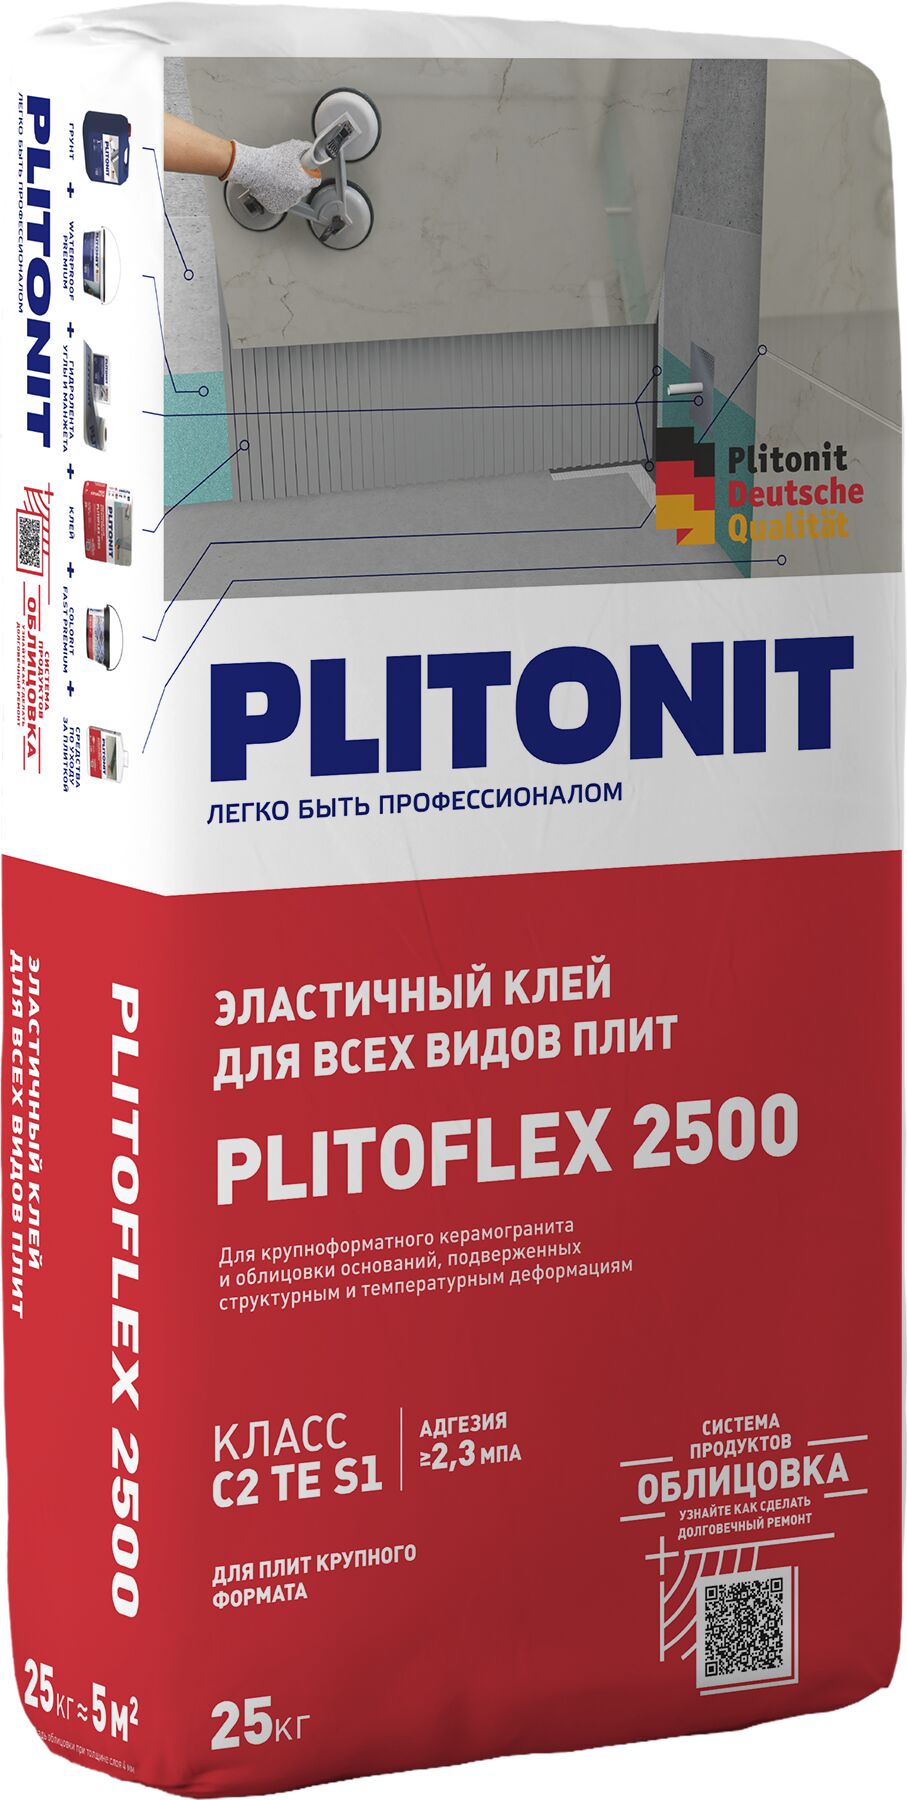 PLITOFLEX 2500 - 25 клей эластичный для крупноформатной плитки и облицовки поверх эластичной гидроизоляции класс C2 TE S1 